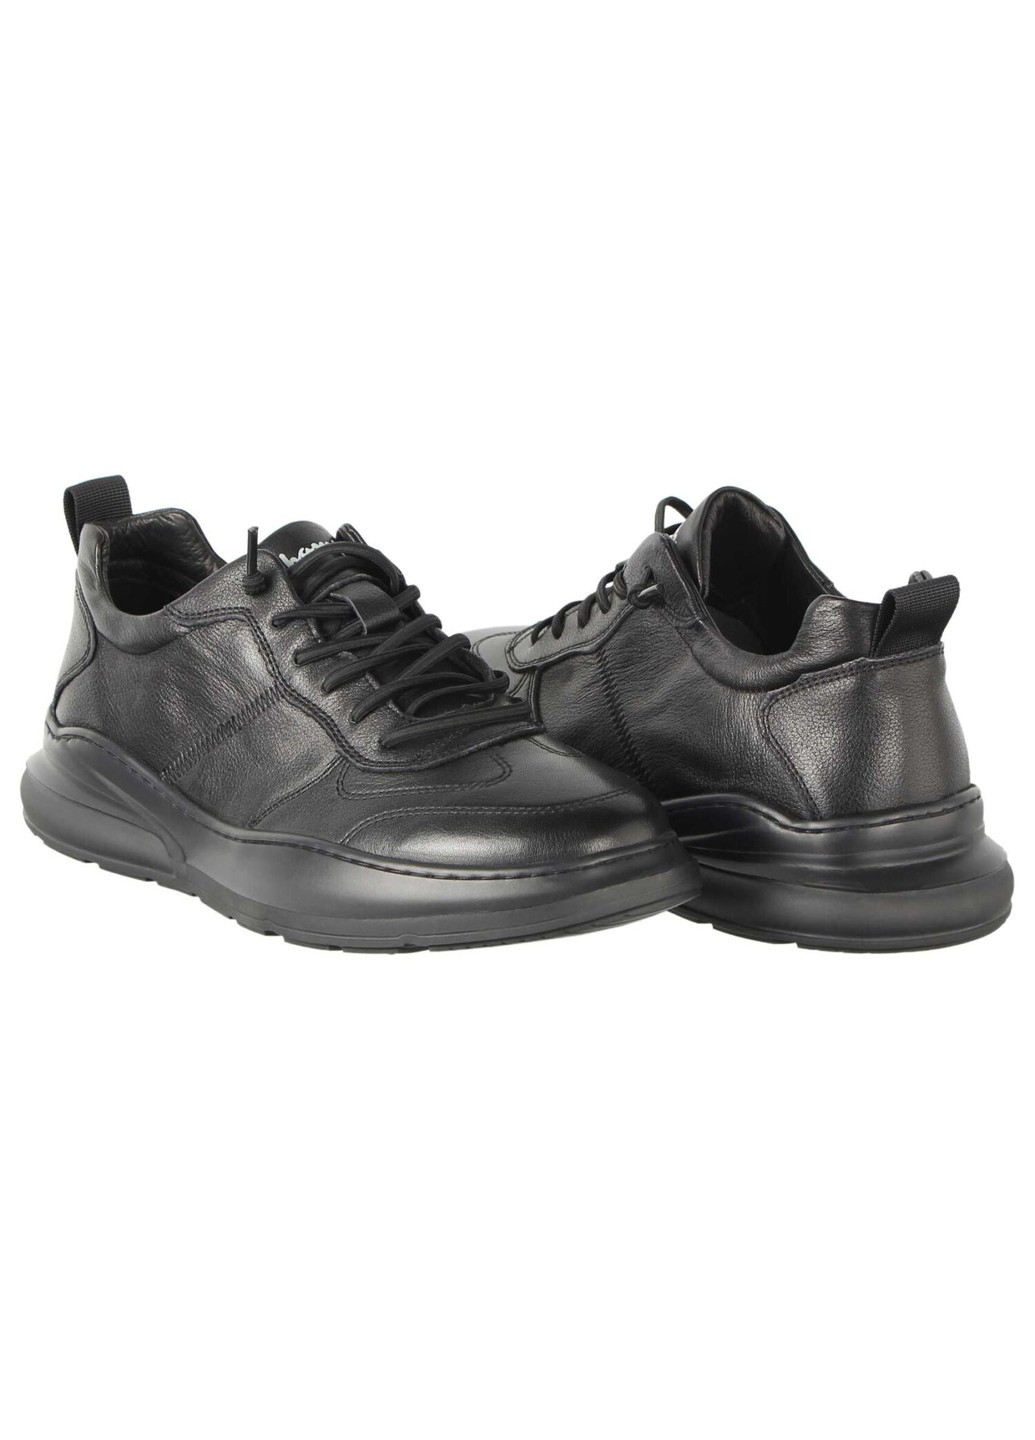 Черные демисезонные мужские кроссовки 196741 Lifexpert